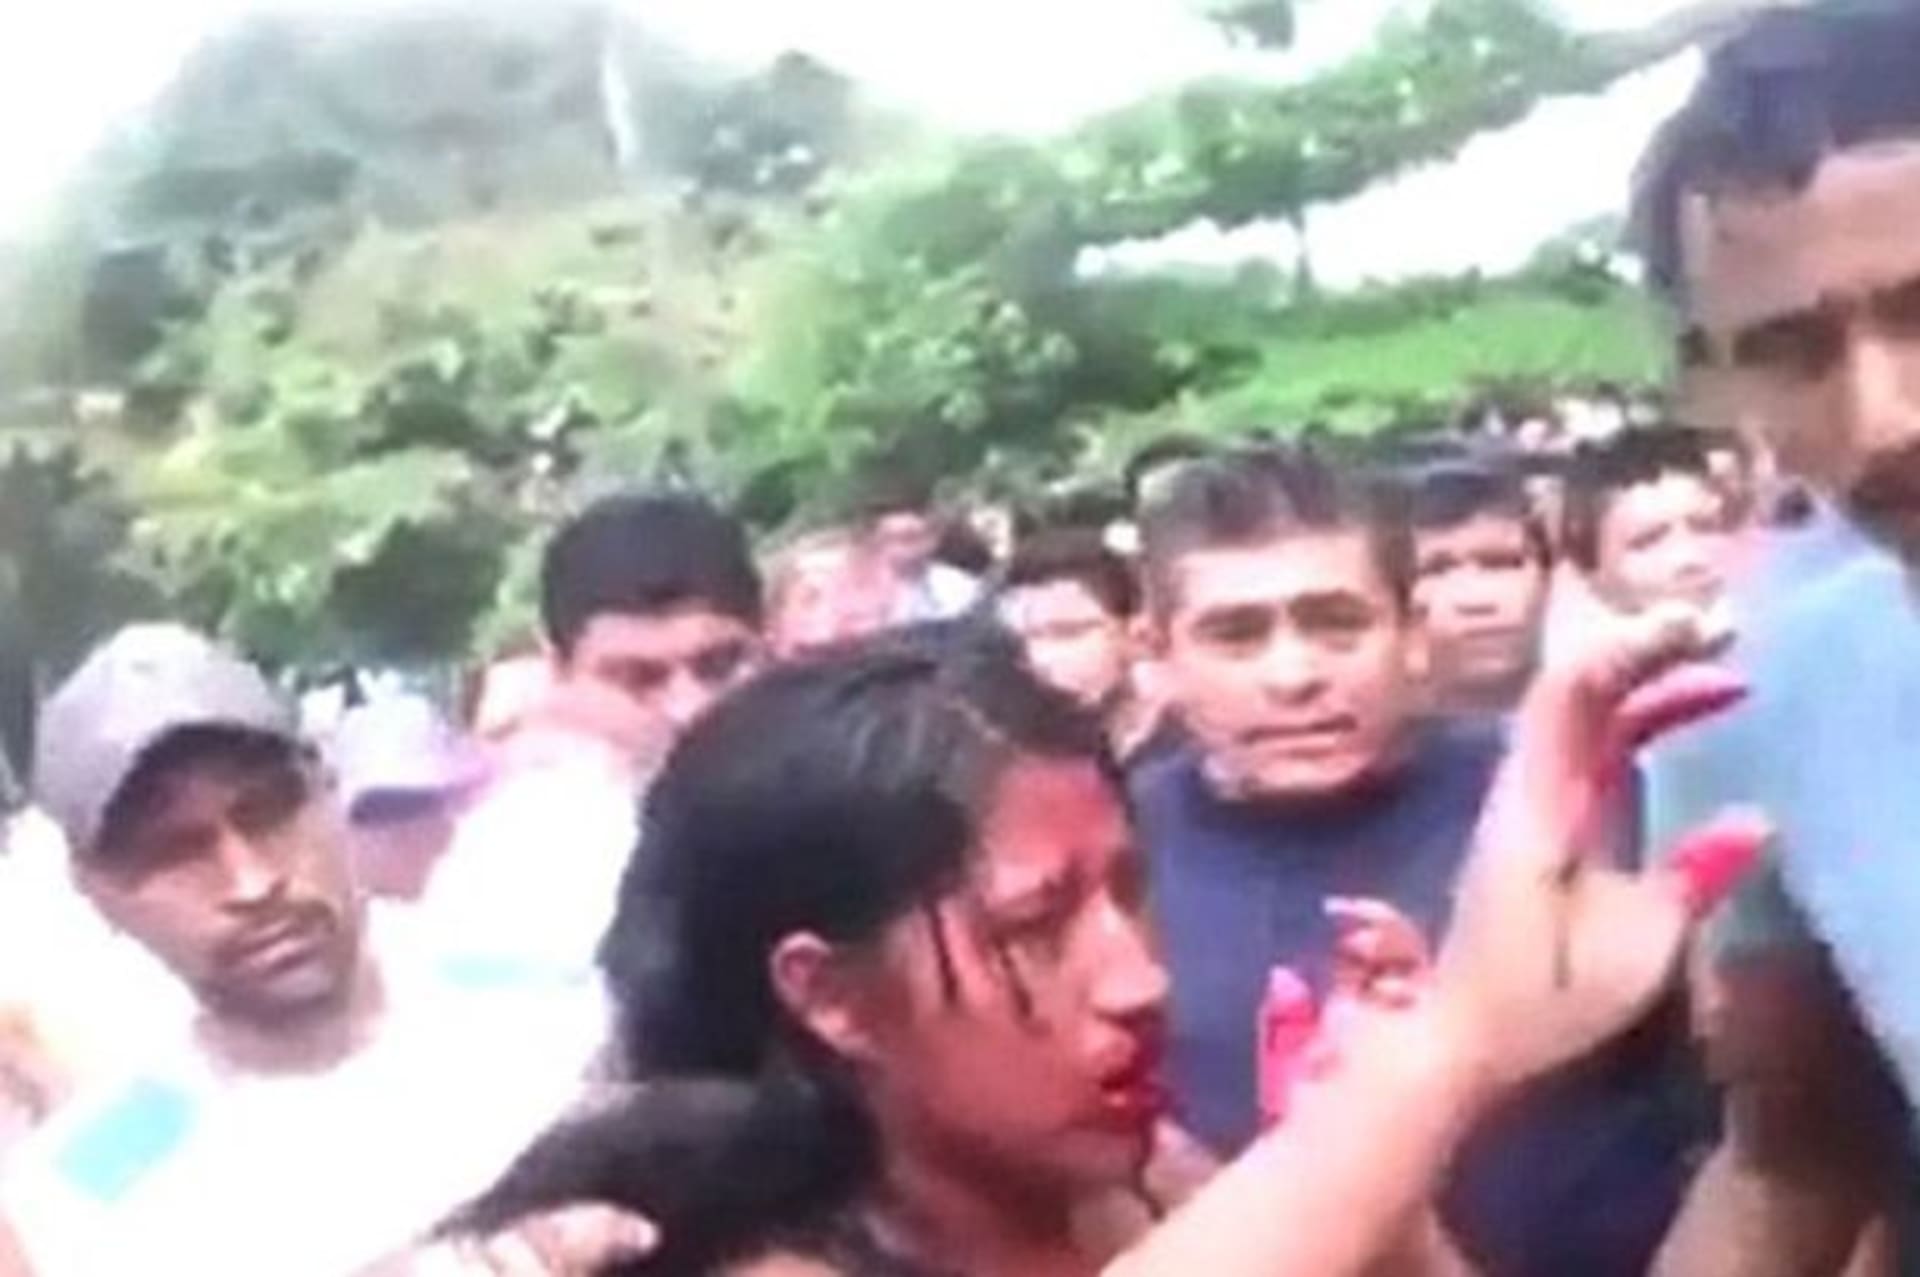 Brutální incident se stal ve vesnici Rio Bravo v Guatemale.